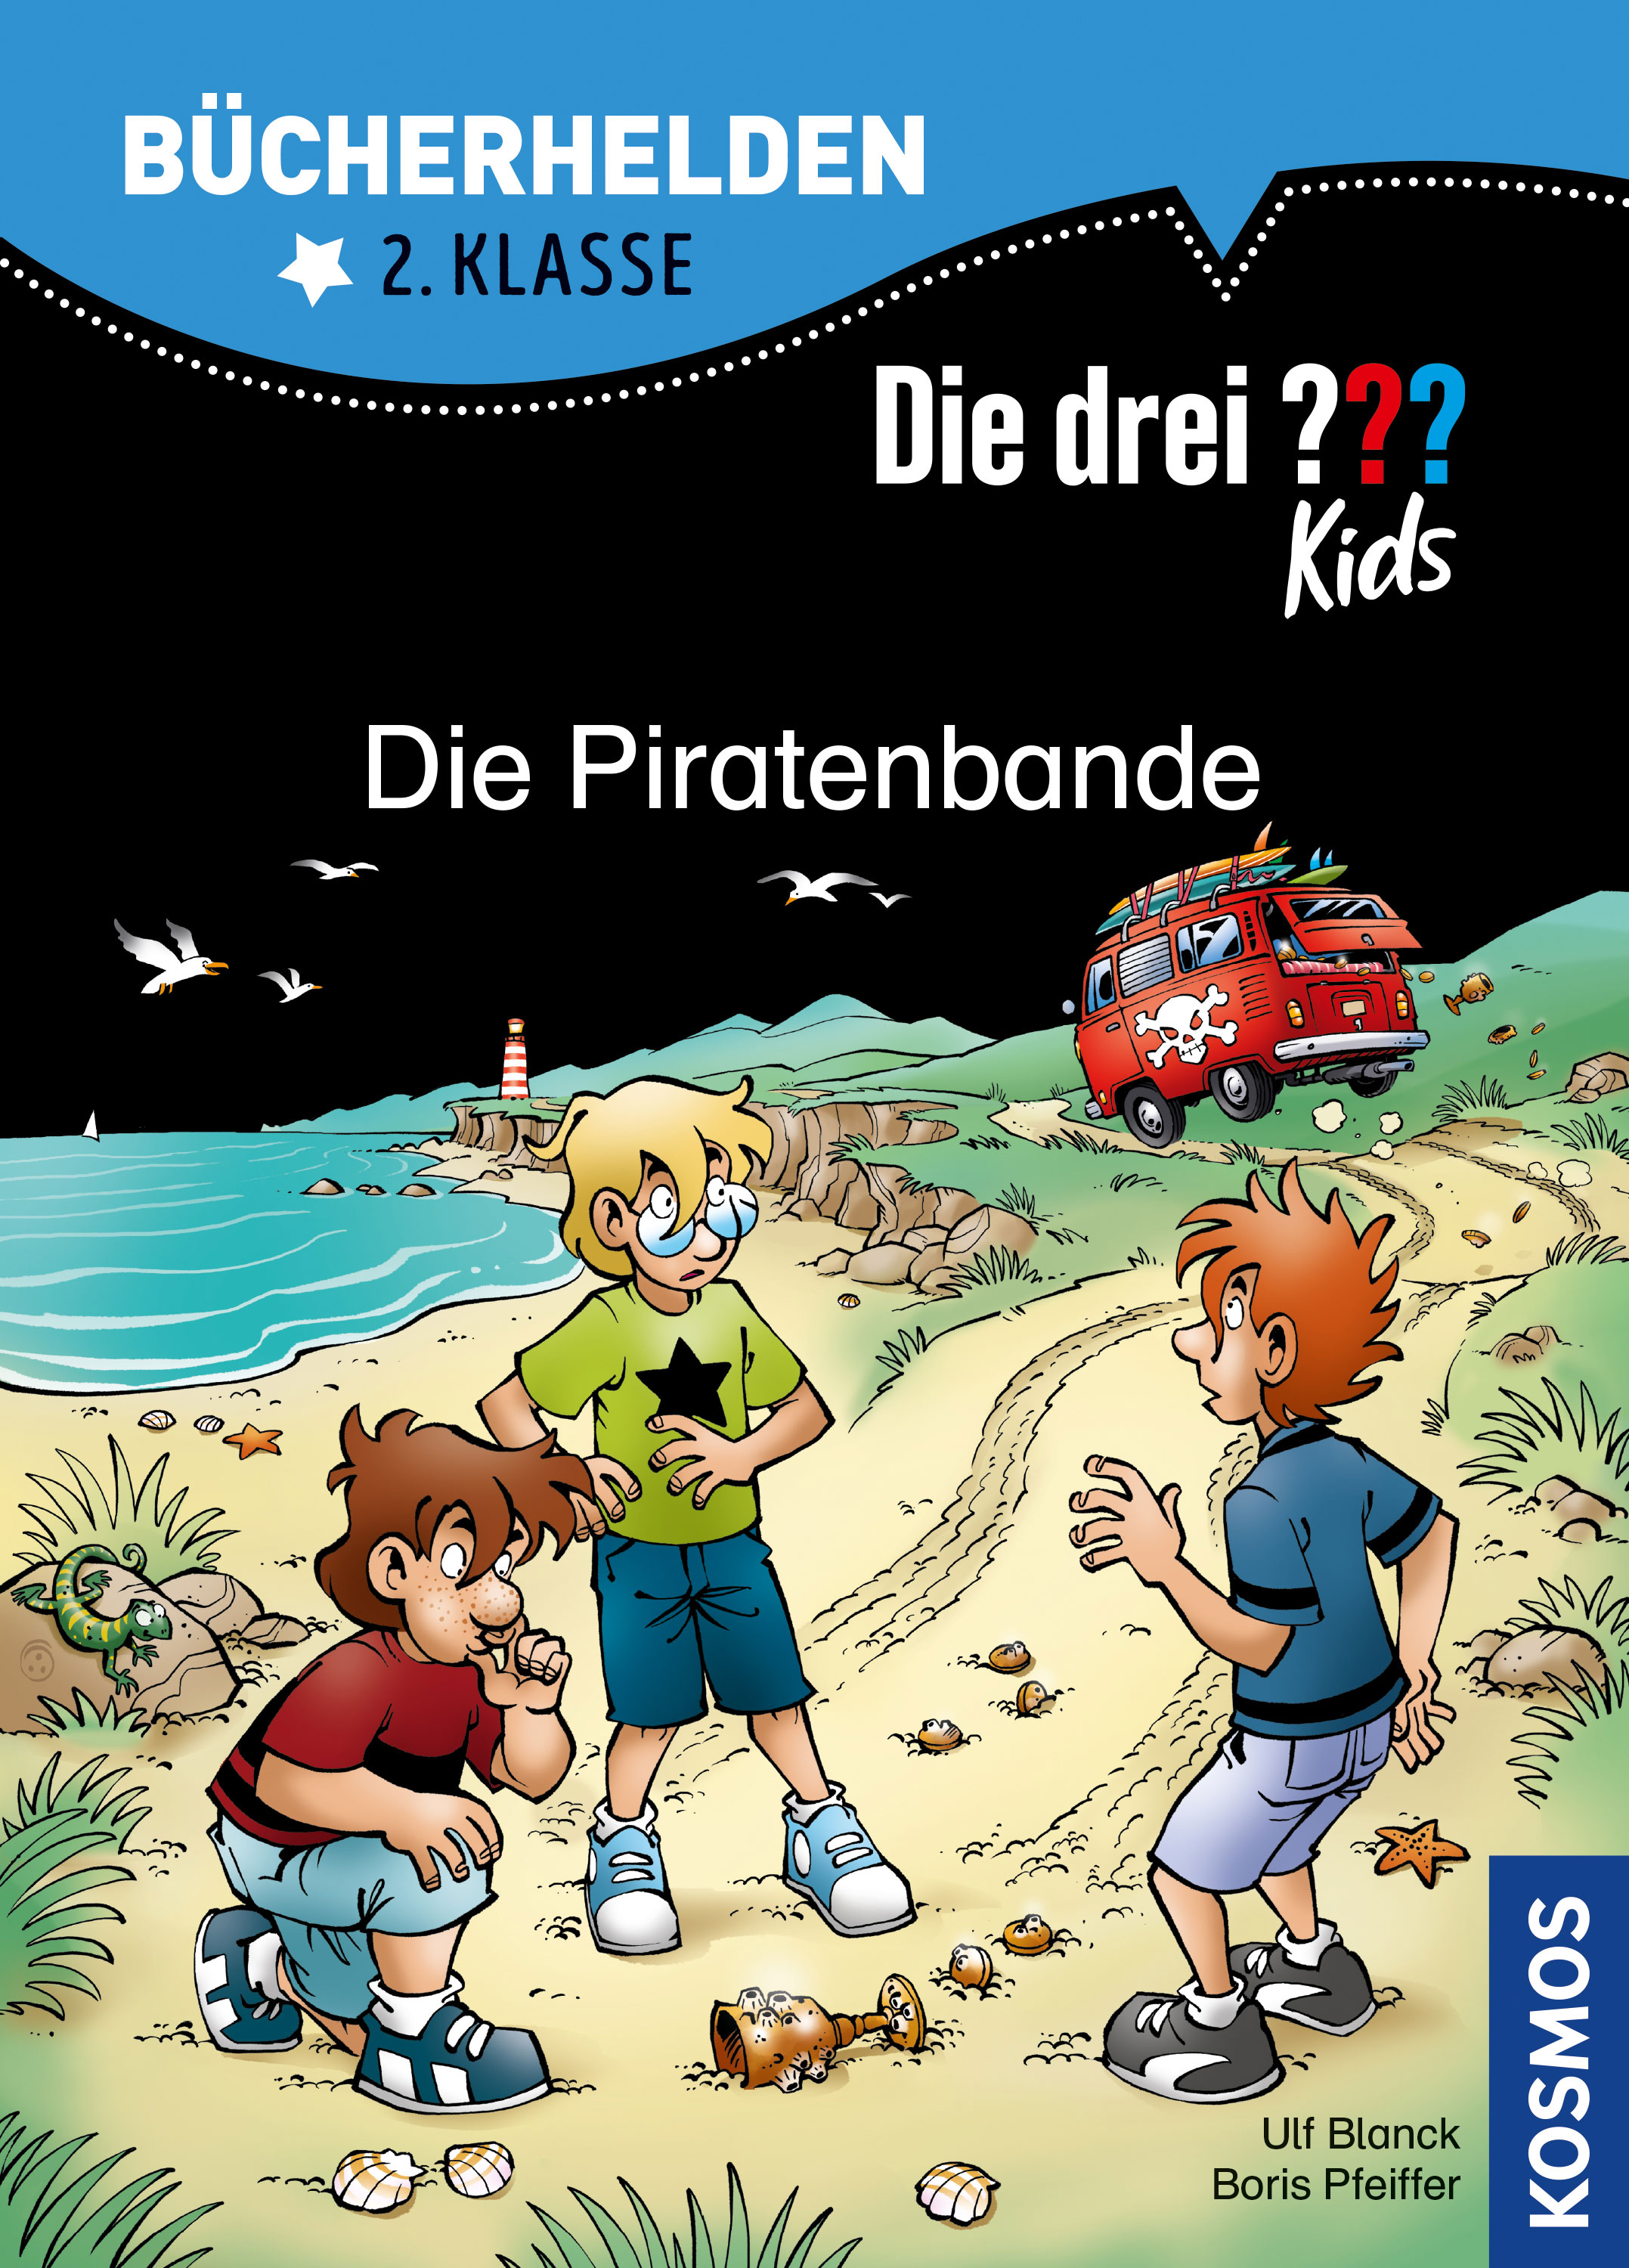 Die Drei ??? (Fragezeichen) Kids, Buch-Special: Die Piratenbande (Bücherhelden 2.Klasse)